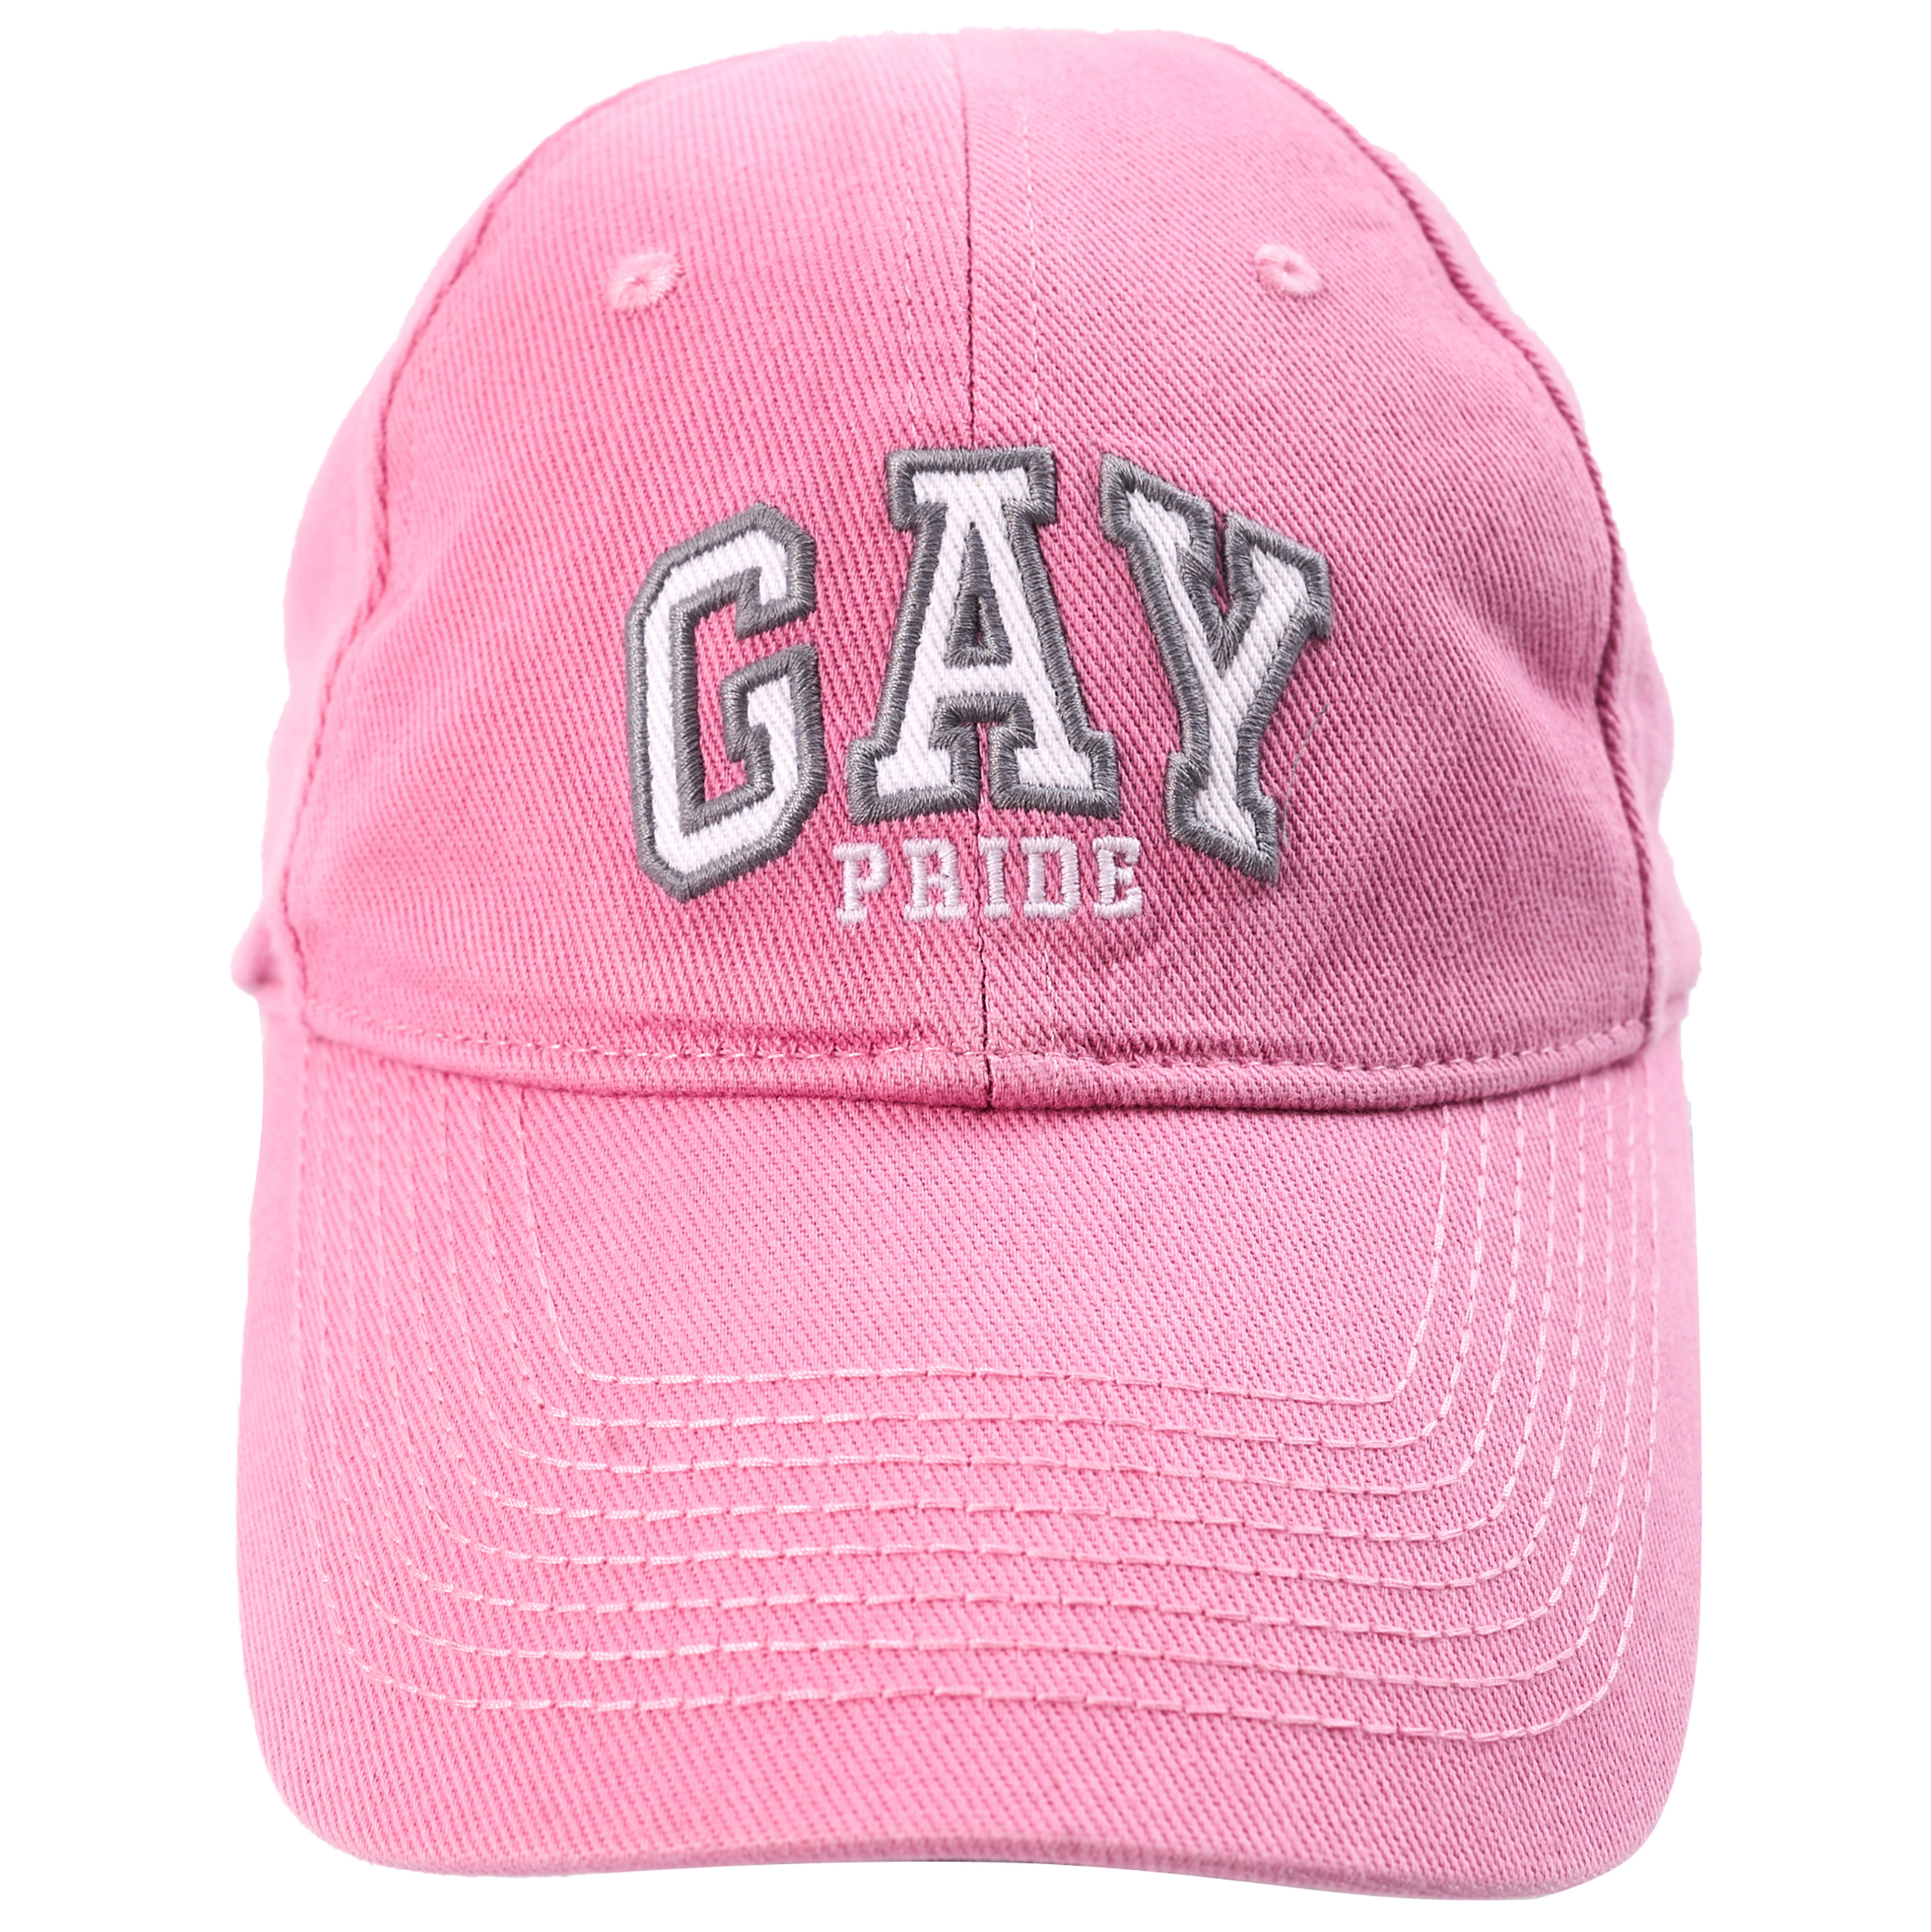 Розовая кепка с вышивкой GAY Balenciaga 670810/410B2/5900, размер L;S